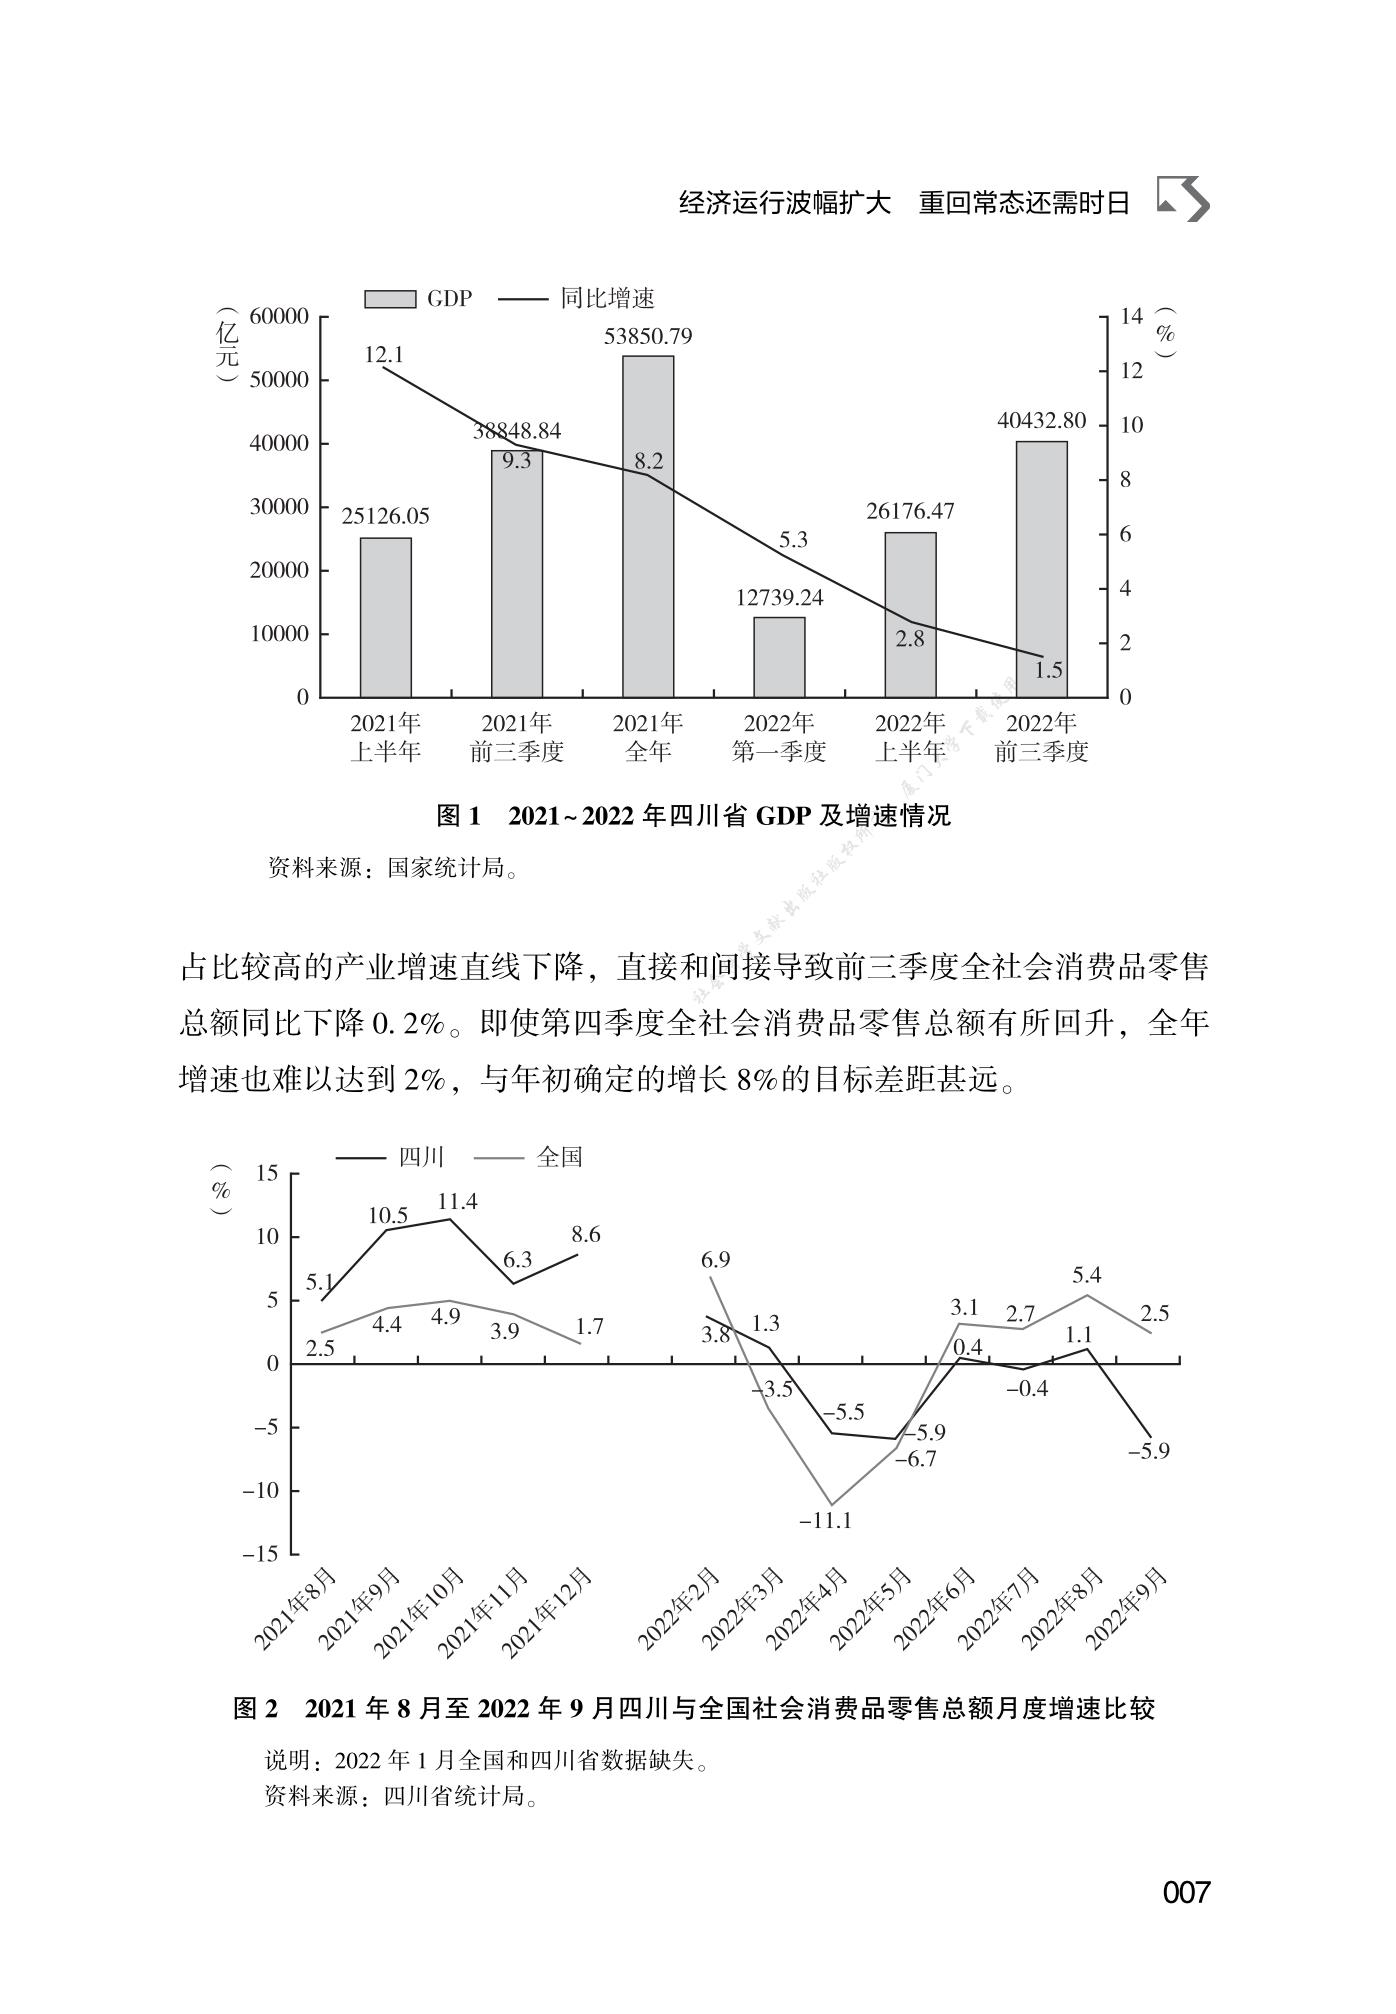 2022-2023中国农村经济形势分析与预测（中）_报告-报告厅